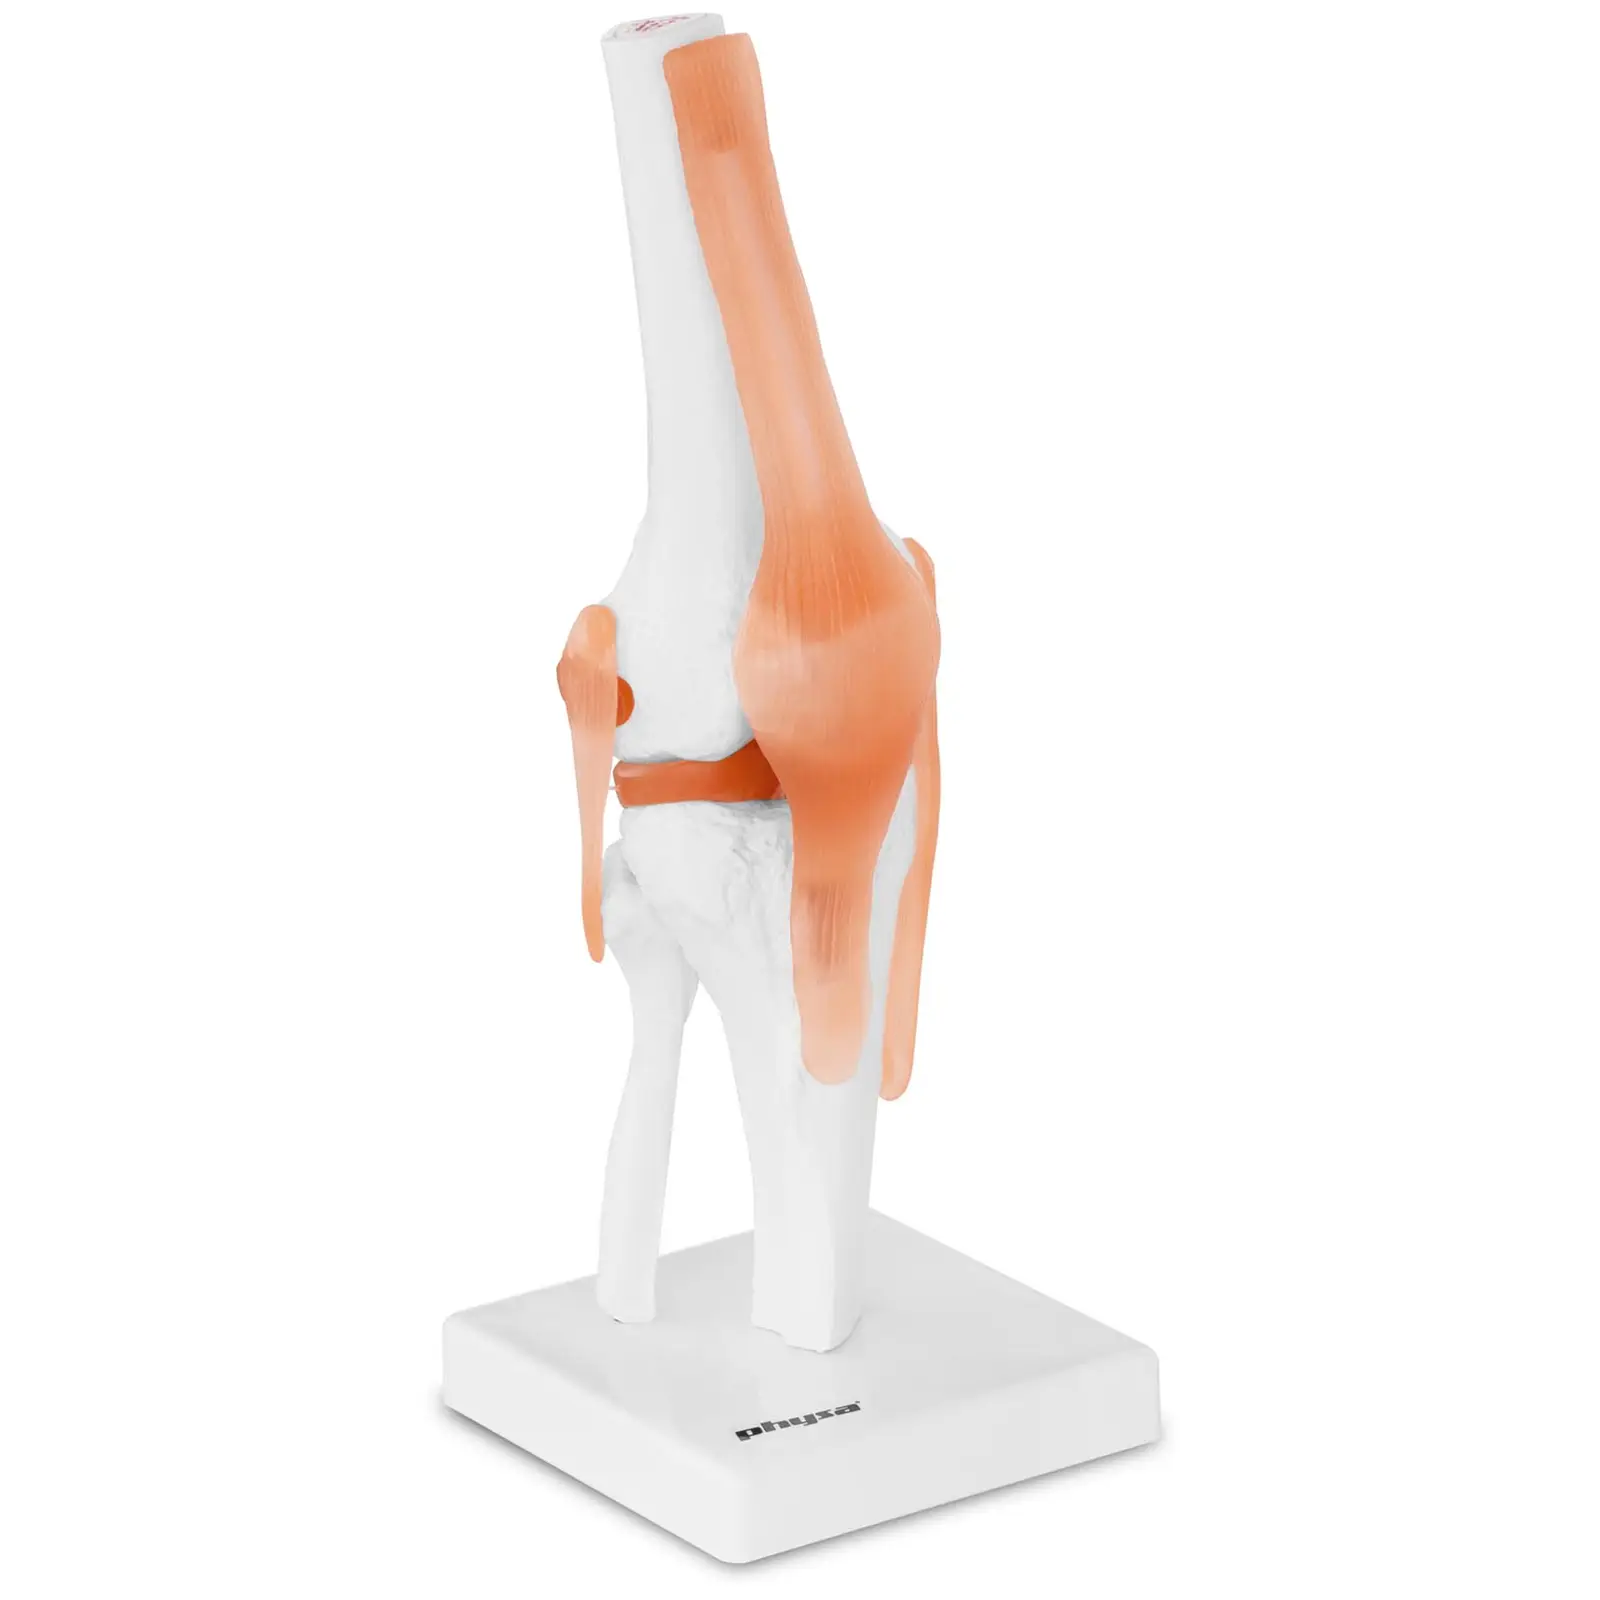 Articulação do joelho - modelo anatómico